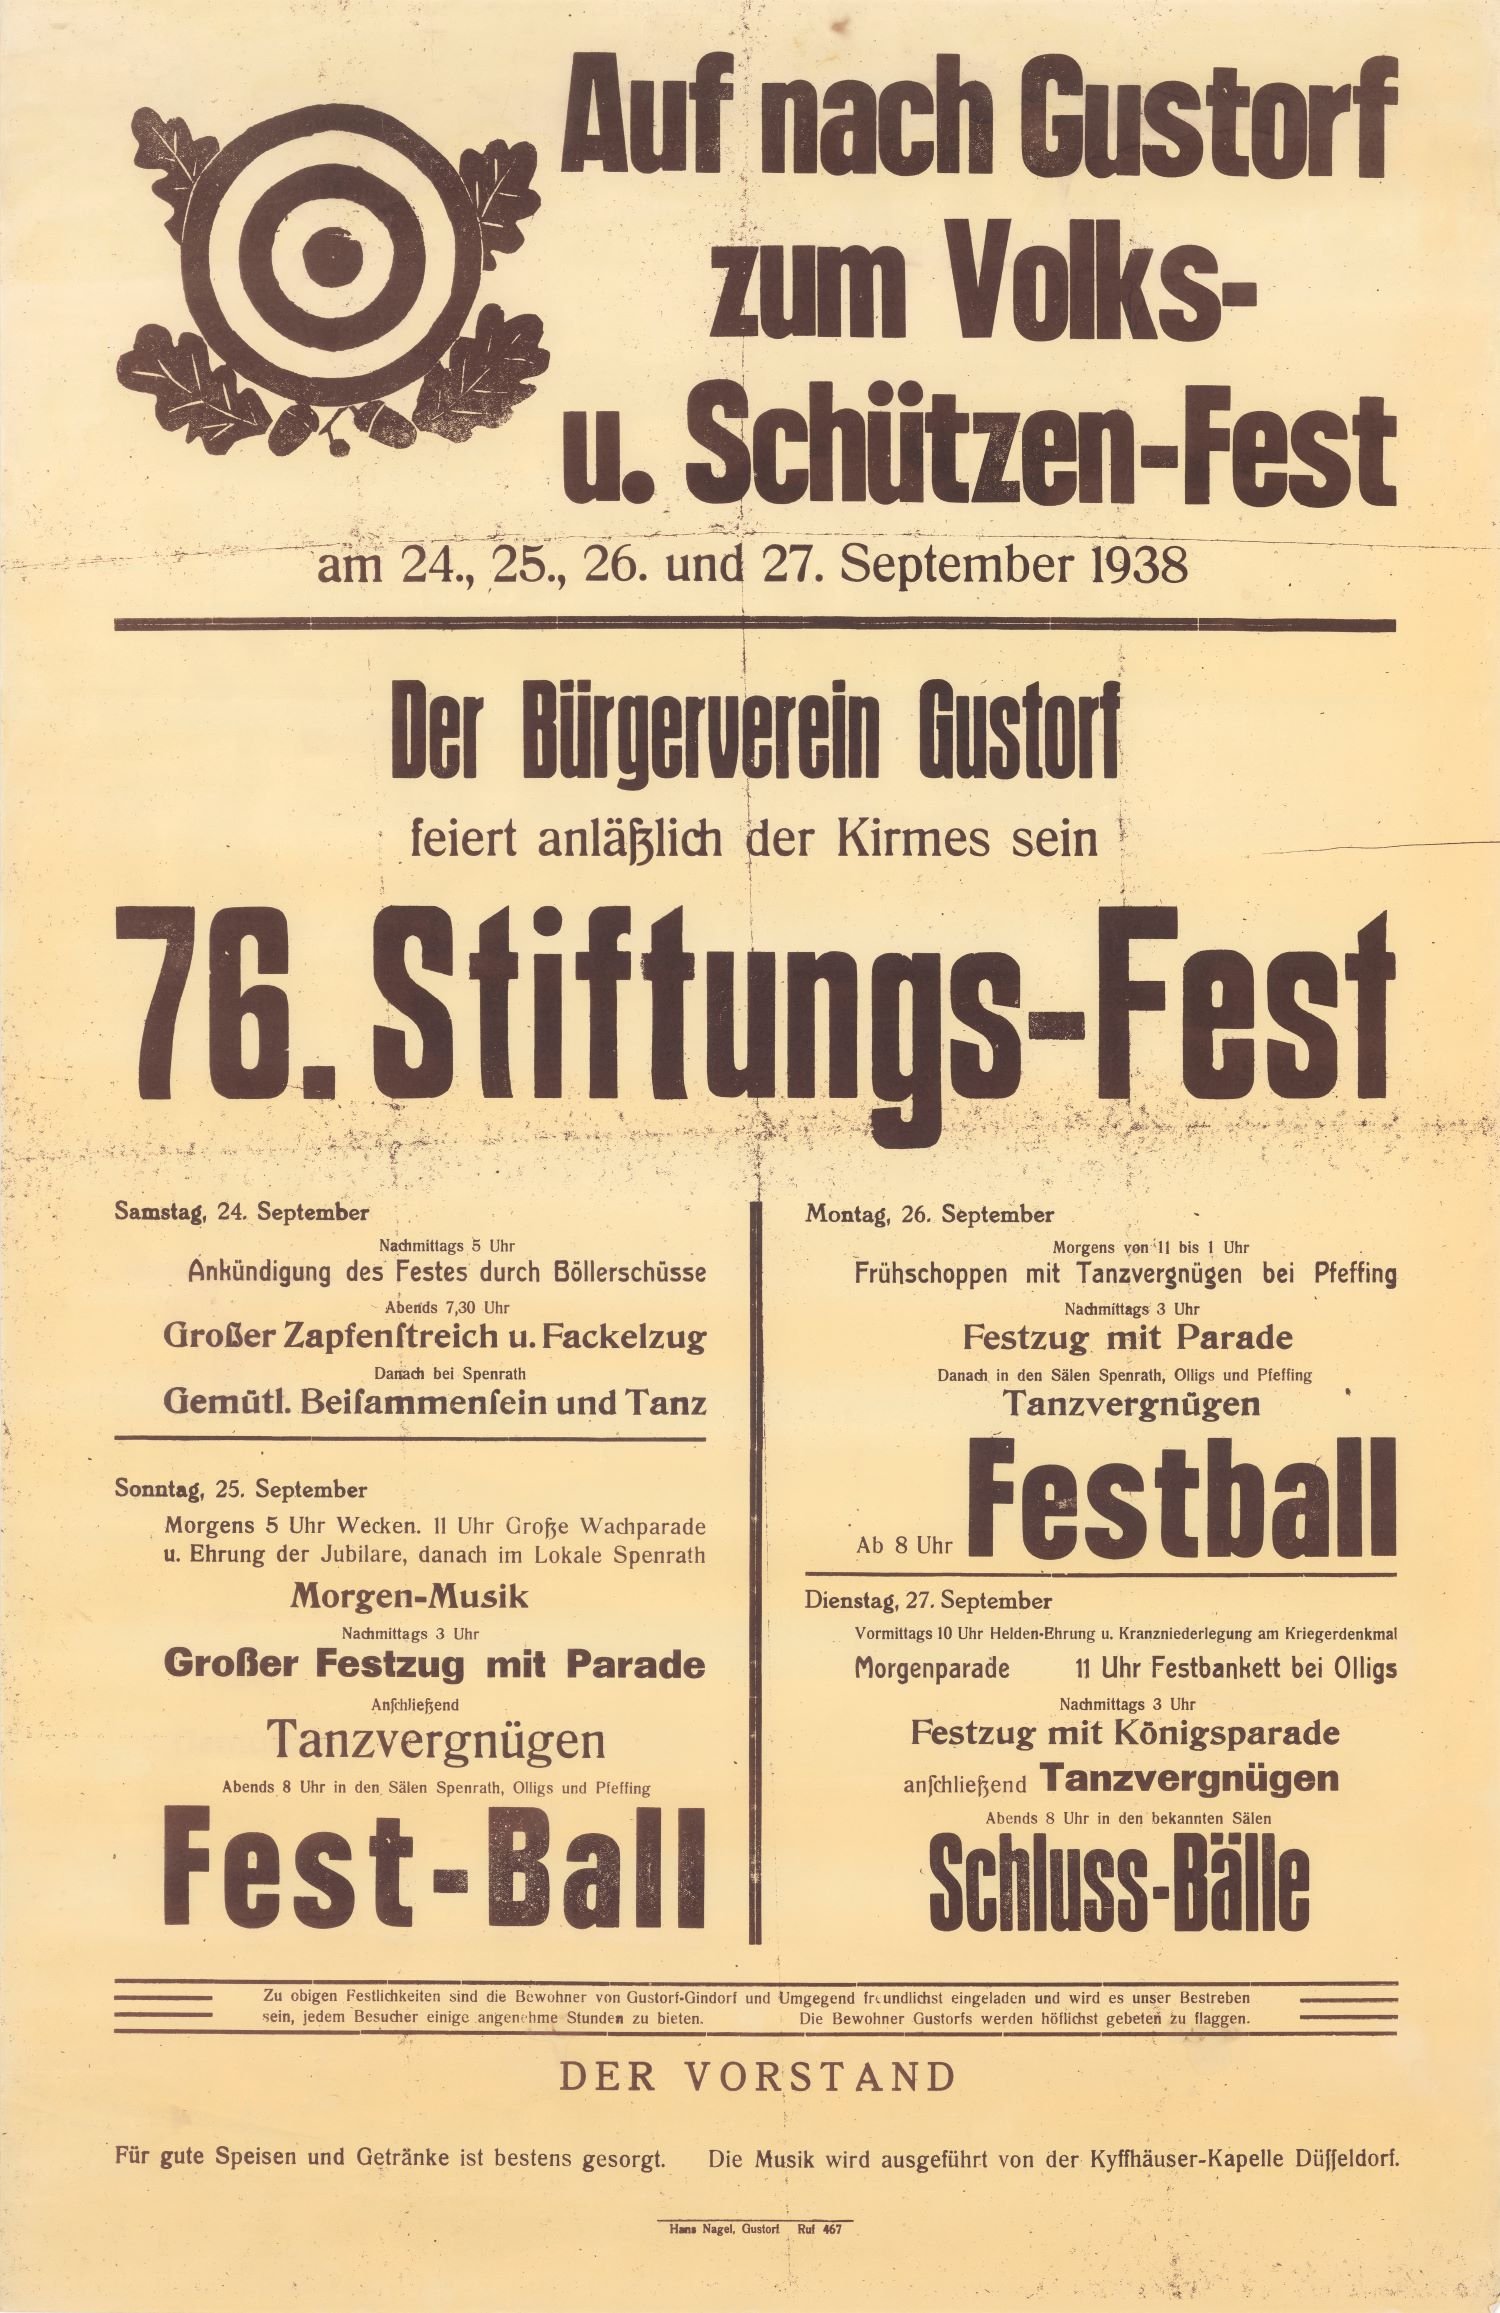 Festplakat Schützenfest Gustorf 1938 (Rheinisches Schützenmuseum Neuss CC BY-NC-SA)